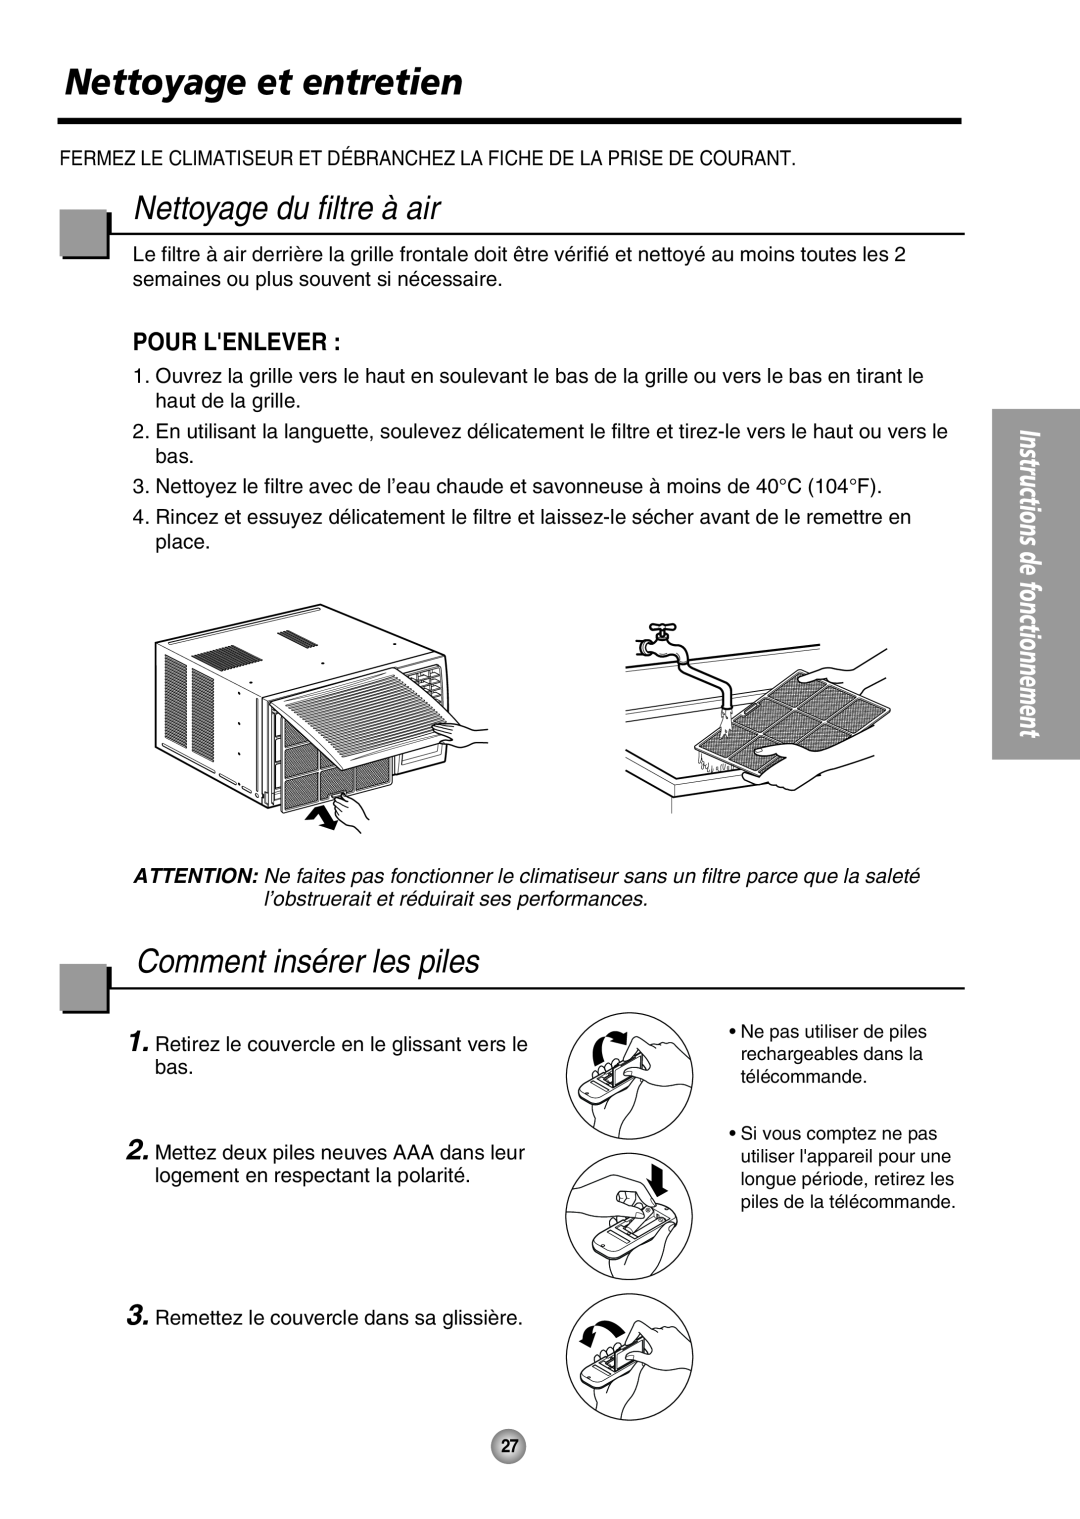 Panasonic CW-XC64HU manual Nettoyage et entretien, Nettoyage du filtre à air, Comment insérer les piles, Pour Lenlever 